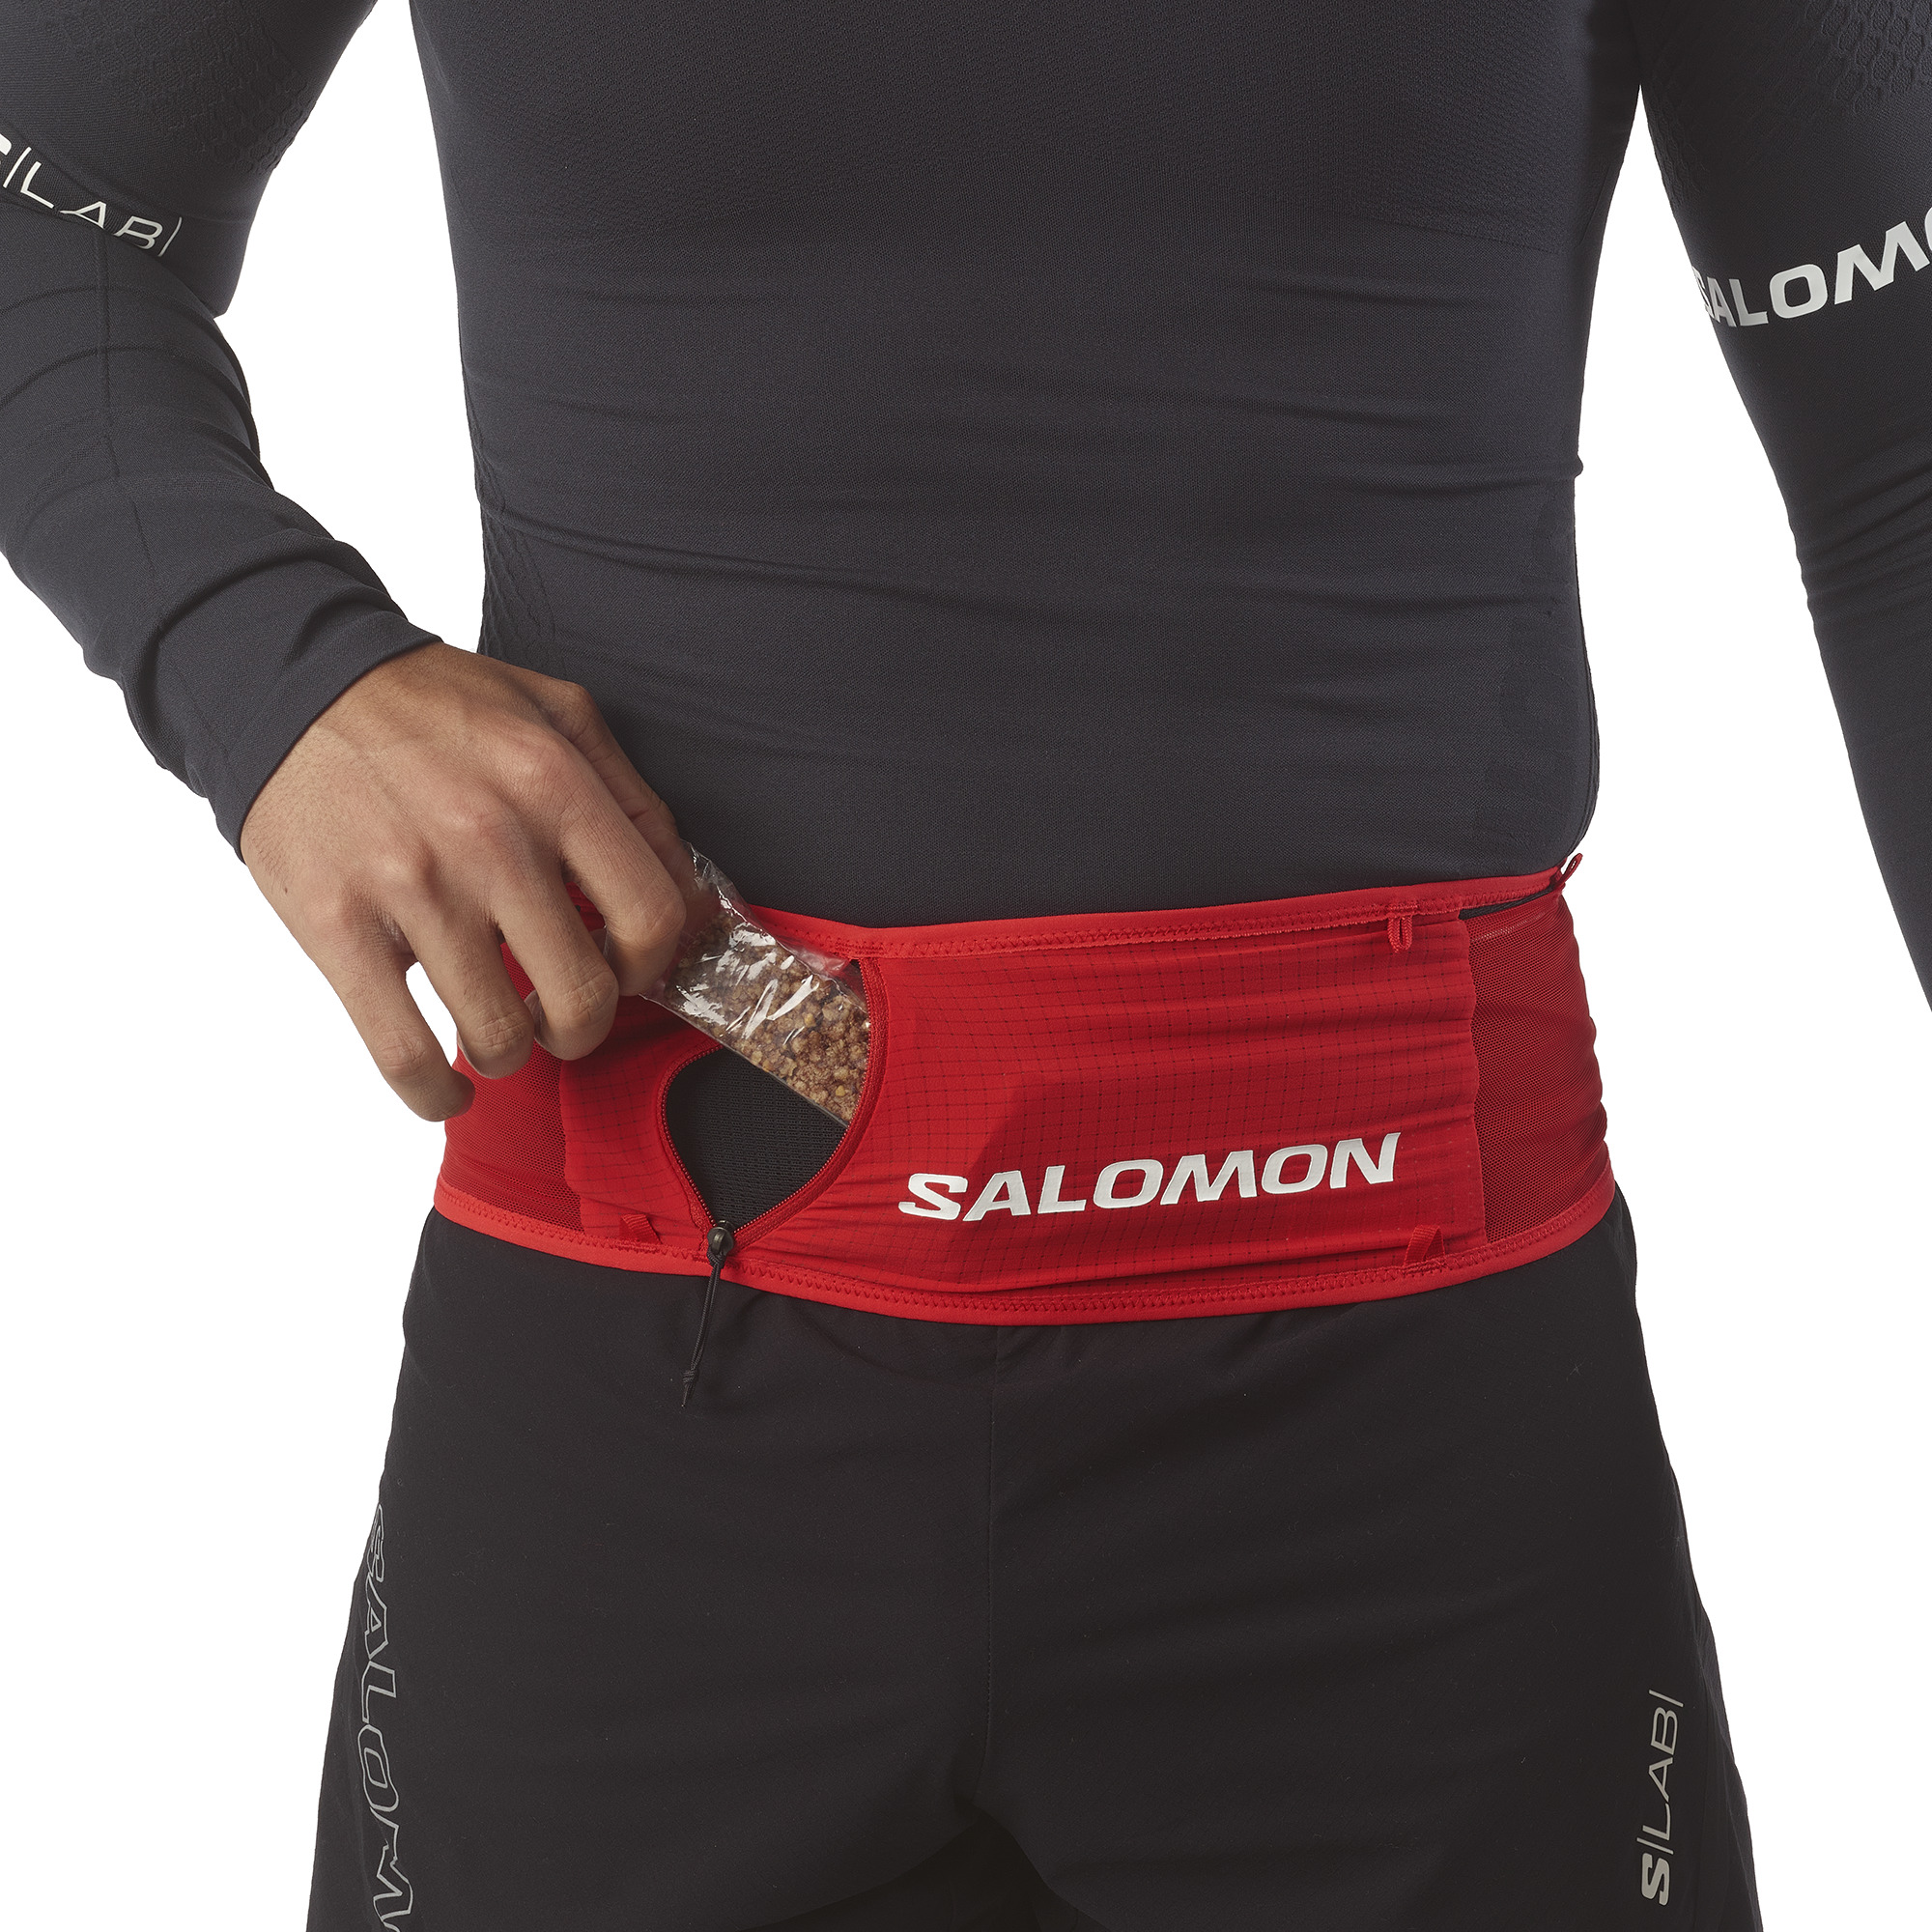 SALOMON S/LAB UNISEX BELT Fiery Red / BLACK